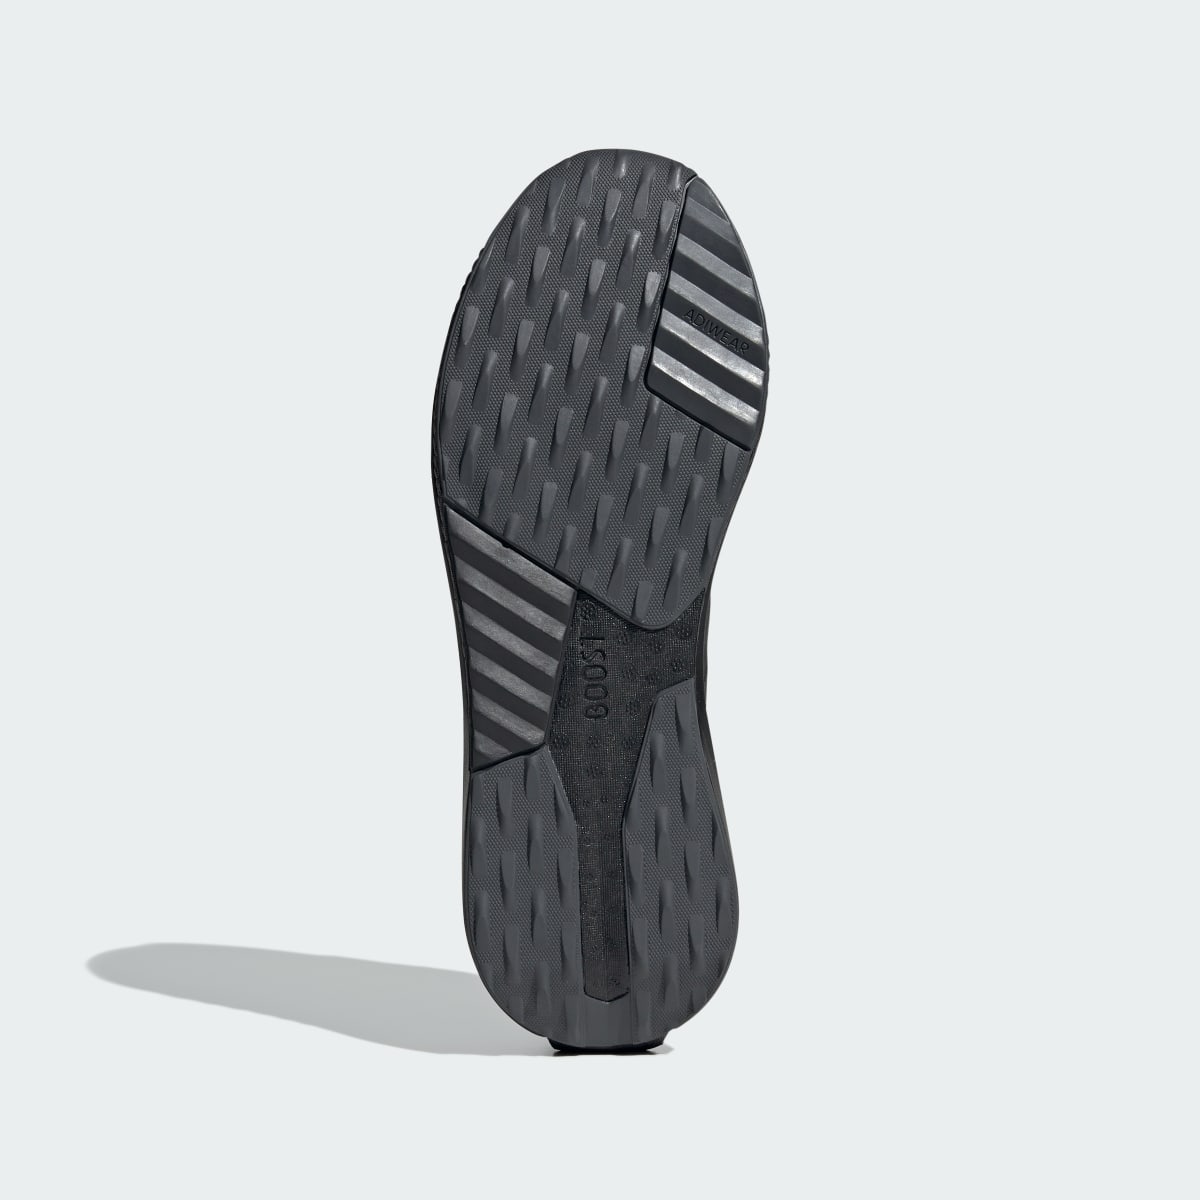 Adidas Avryn Ayakkabı. 10